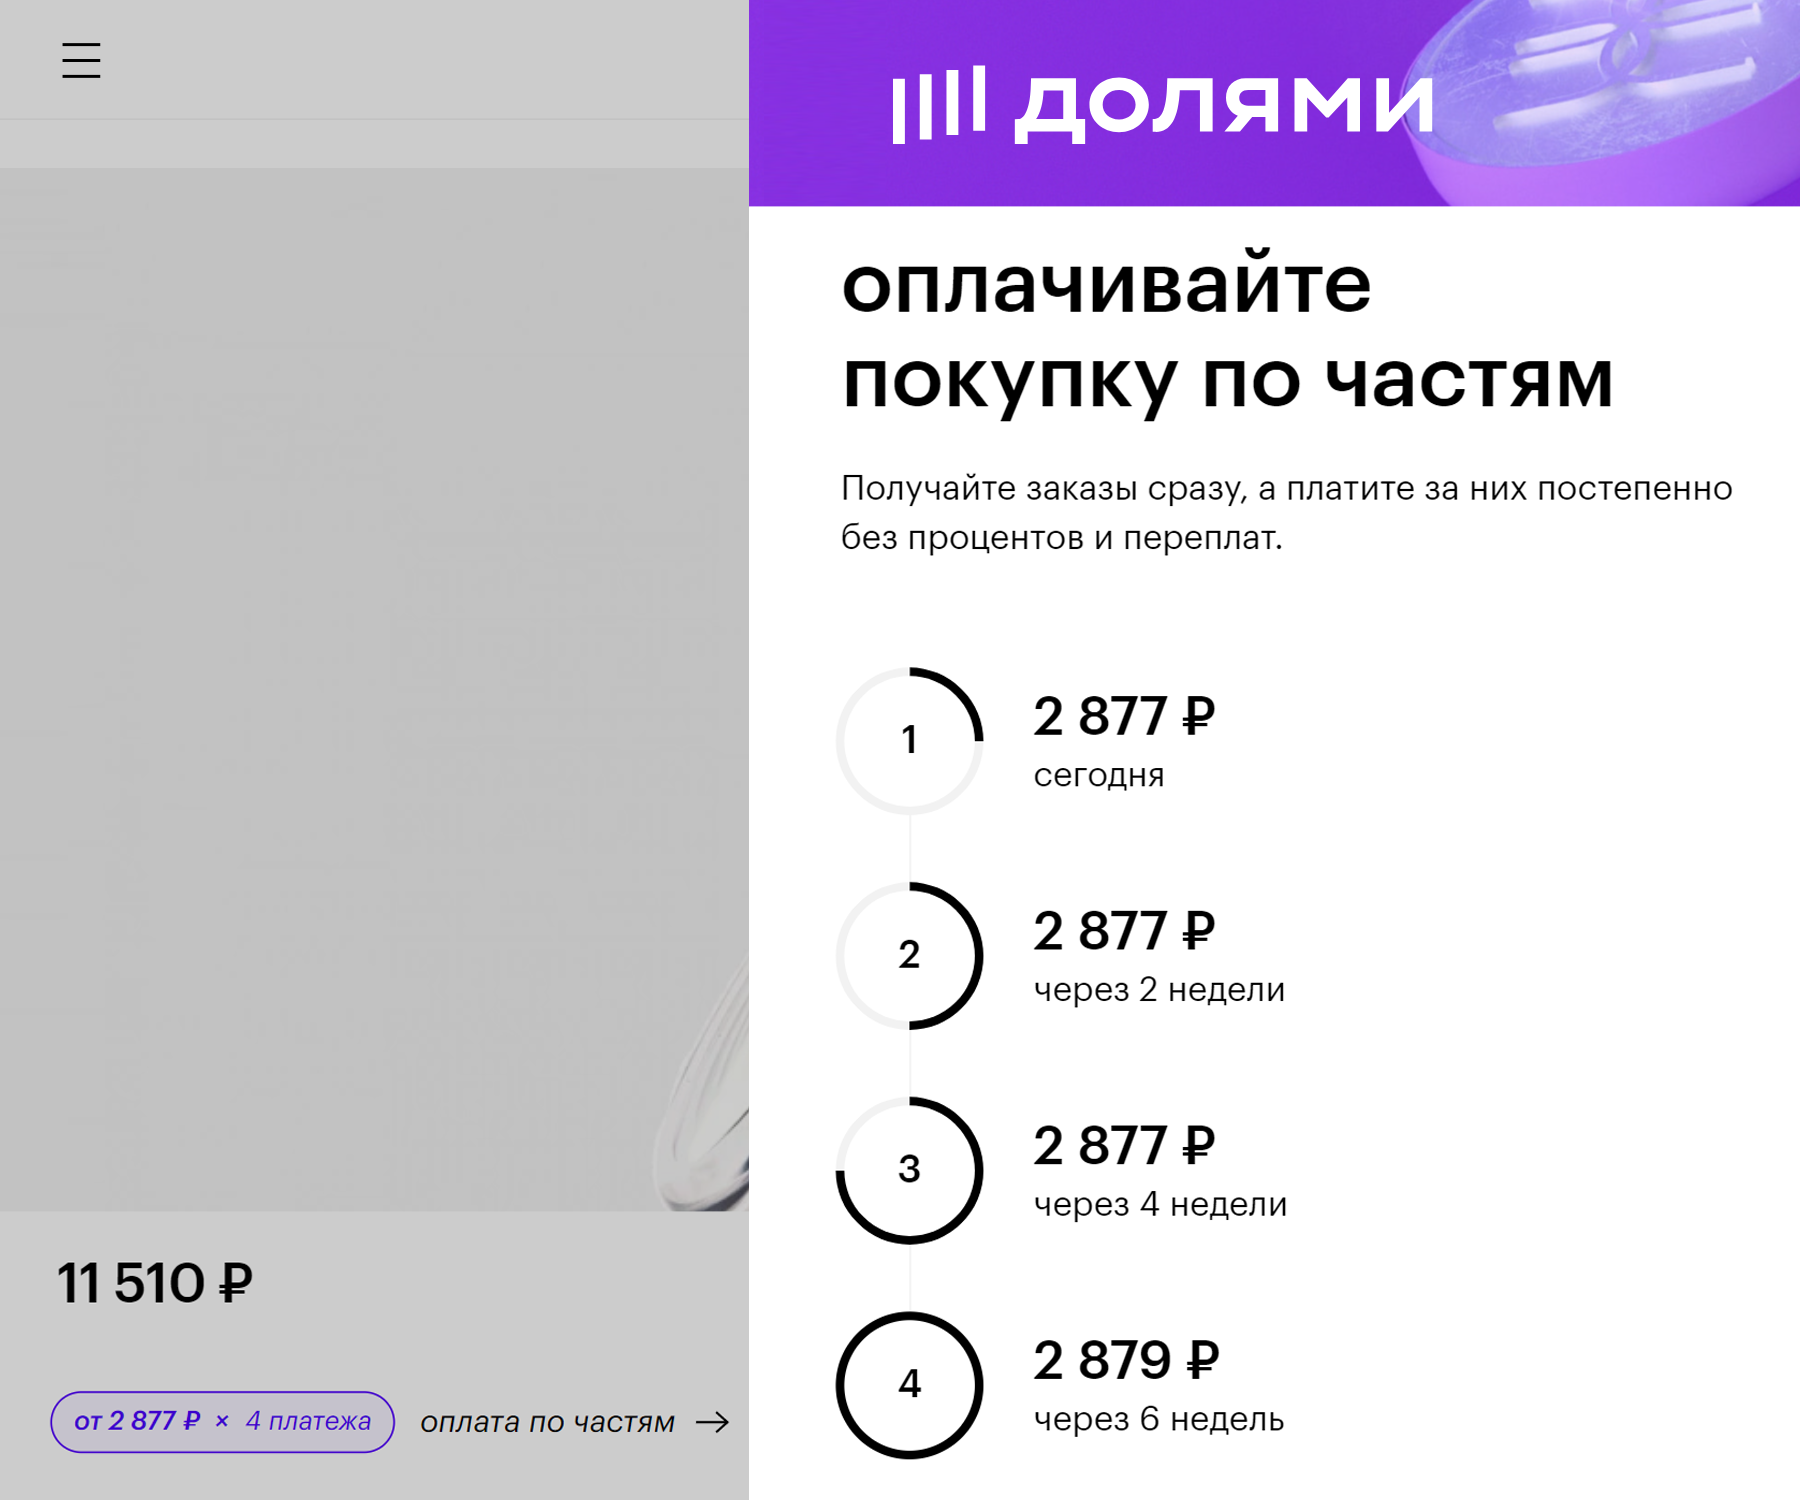 Так выглядит описание оплаты через сервис «Долями» на сайте «Золотого яблока». Источник: goldapple.ru